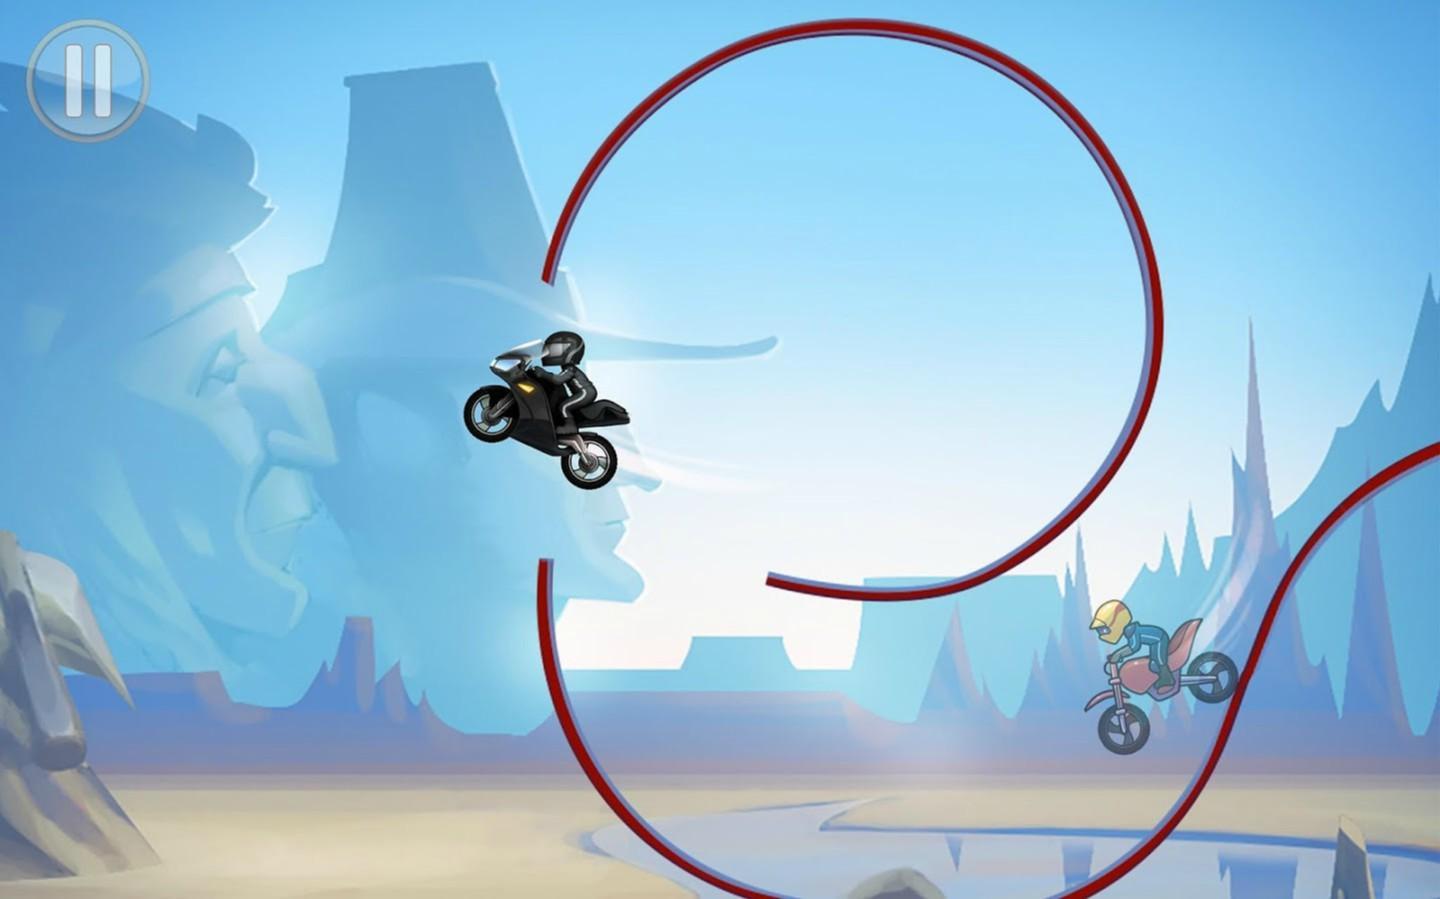 Bike Race - Motorcycle Racing Game遊戲截圖